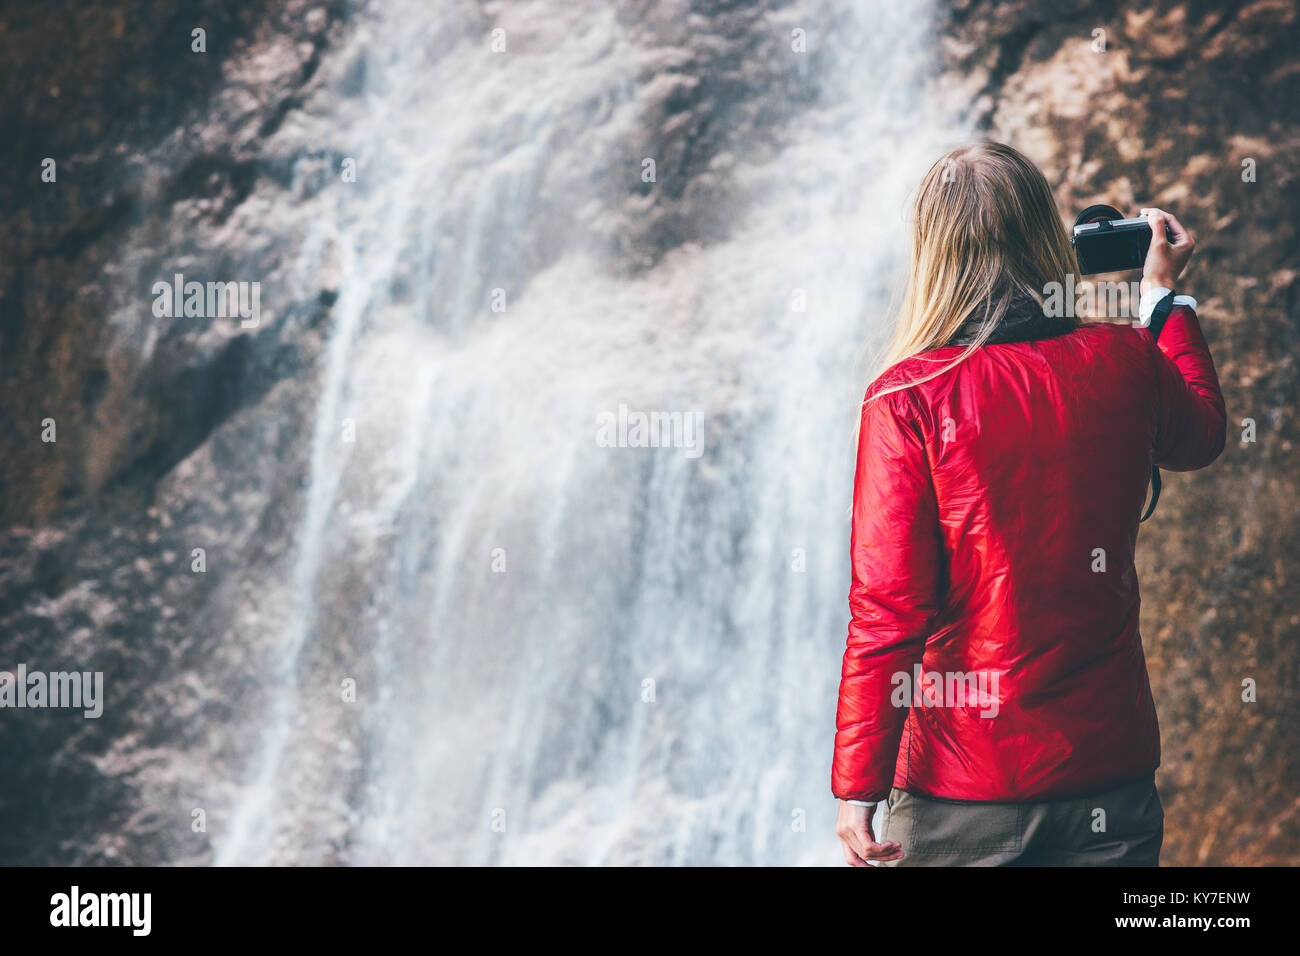 Donna fotografo godendo waterfall Travel Lifestyle adventure concept vacanze attive nel selvaggio in armonia con la natura Foto Stock